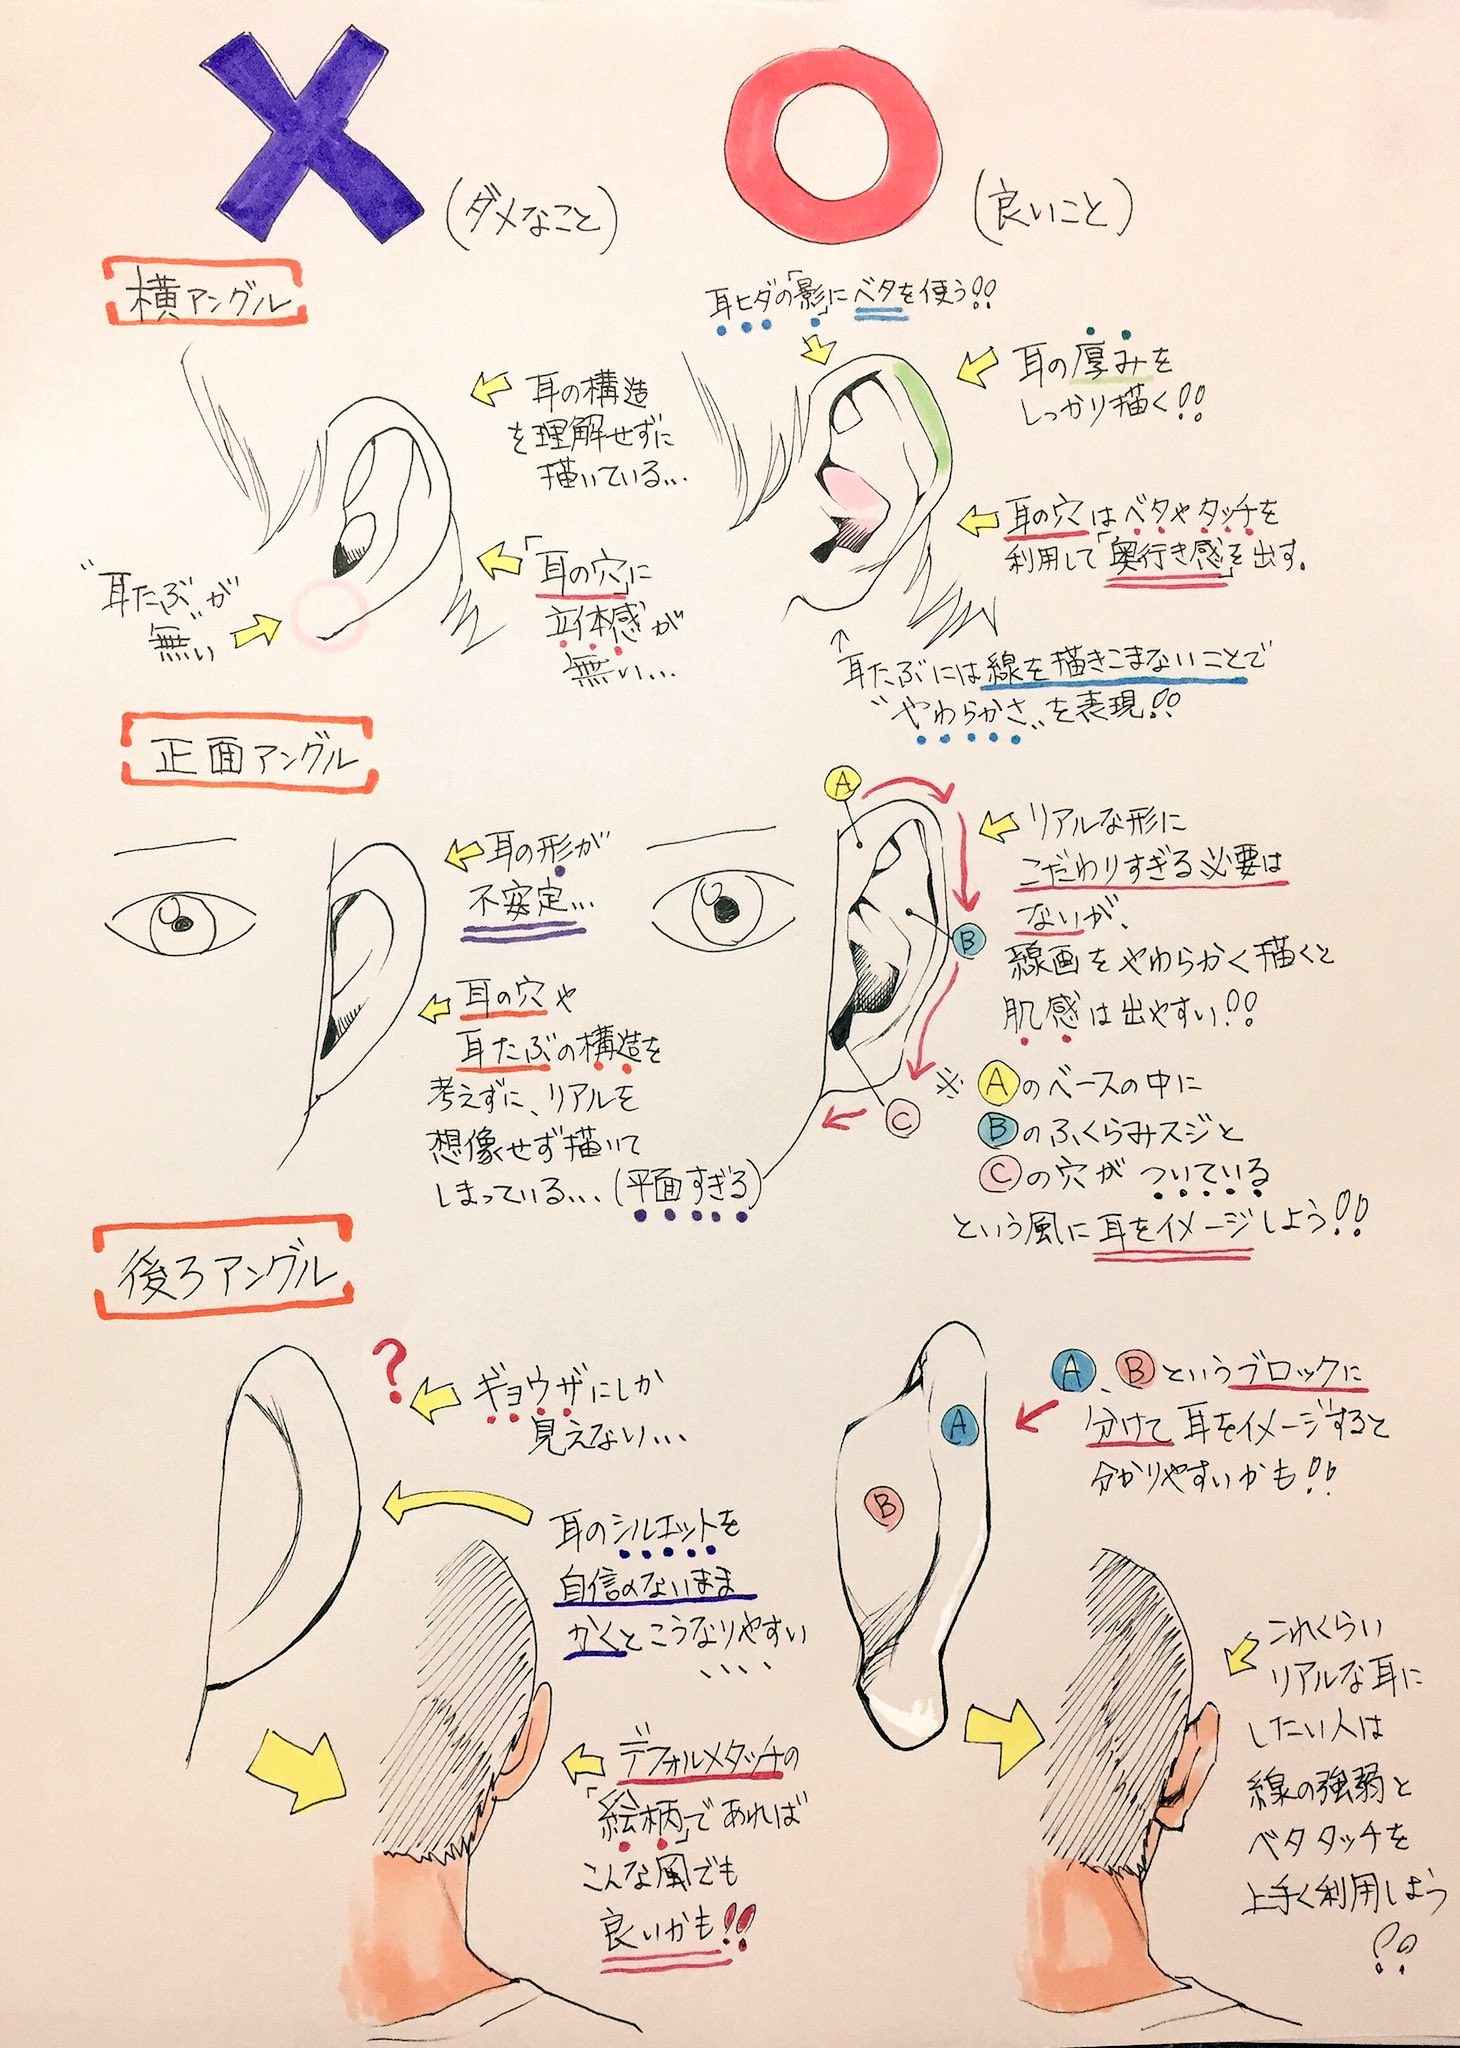 吉村拓也 イラスト講座 耳の描き方 上達するための ダメなこと と 良いこと T Co Wpsakfwetx Twitter